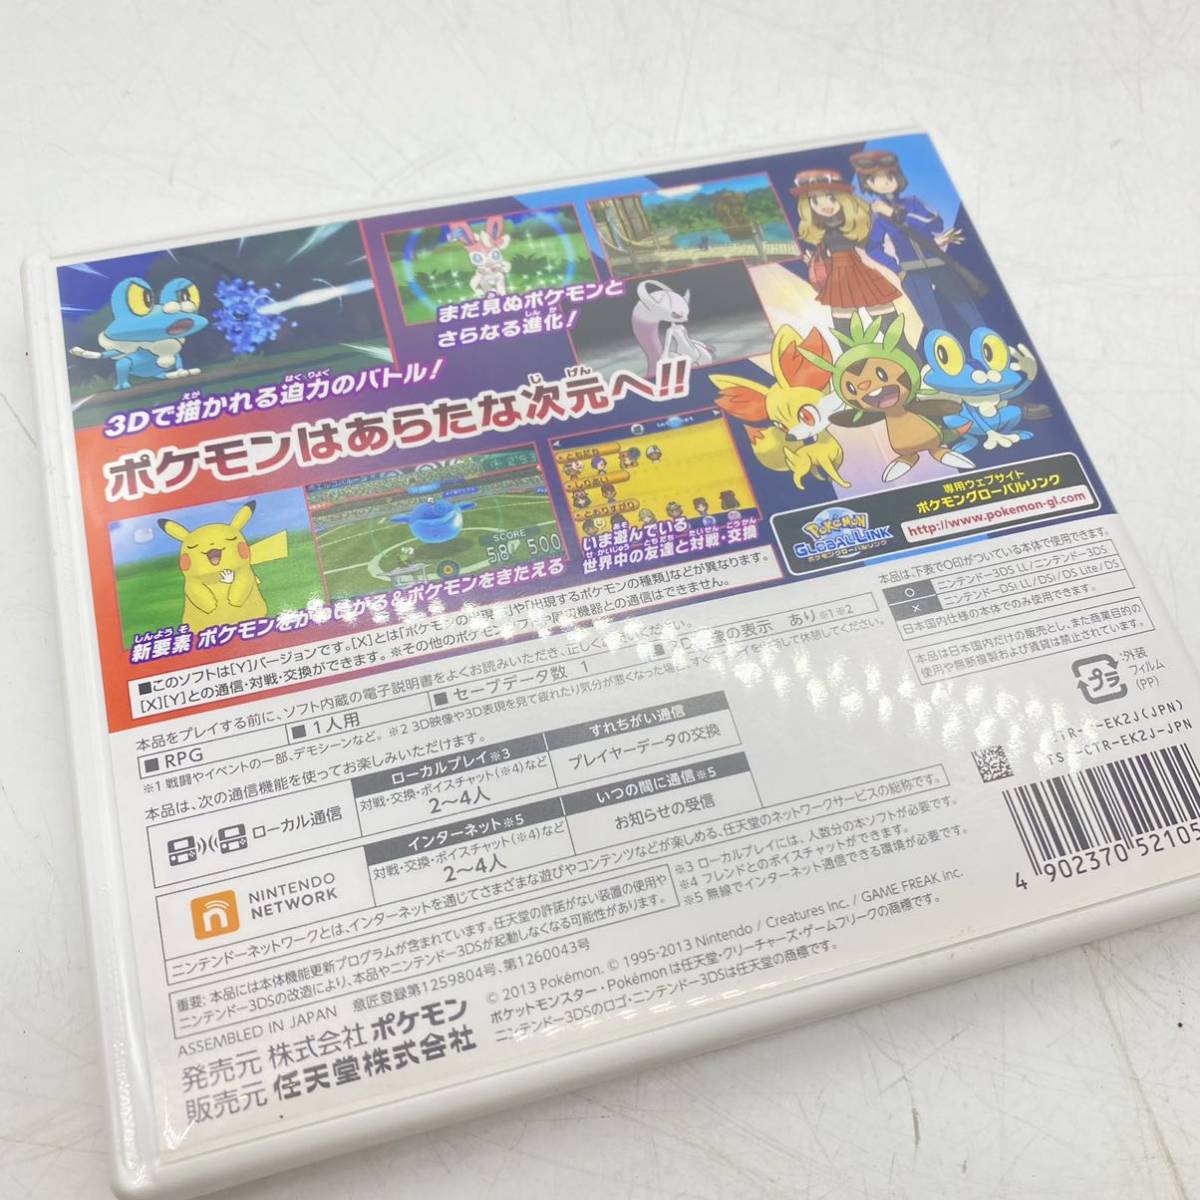 【送料無料】 3DS ソフト ポケットモンスターY ポケモン ニンテンドー3DS nintendo ゲーム ソフト pokemon